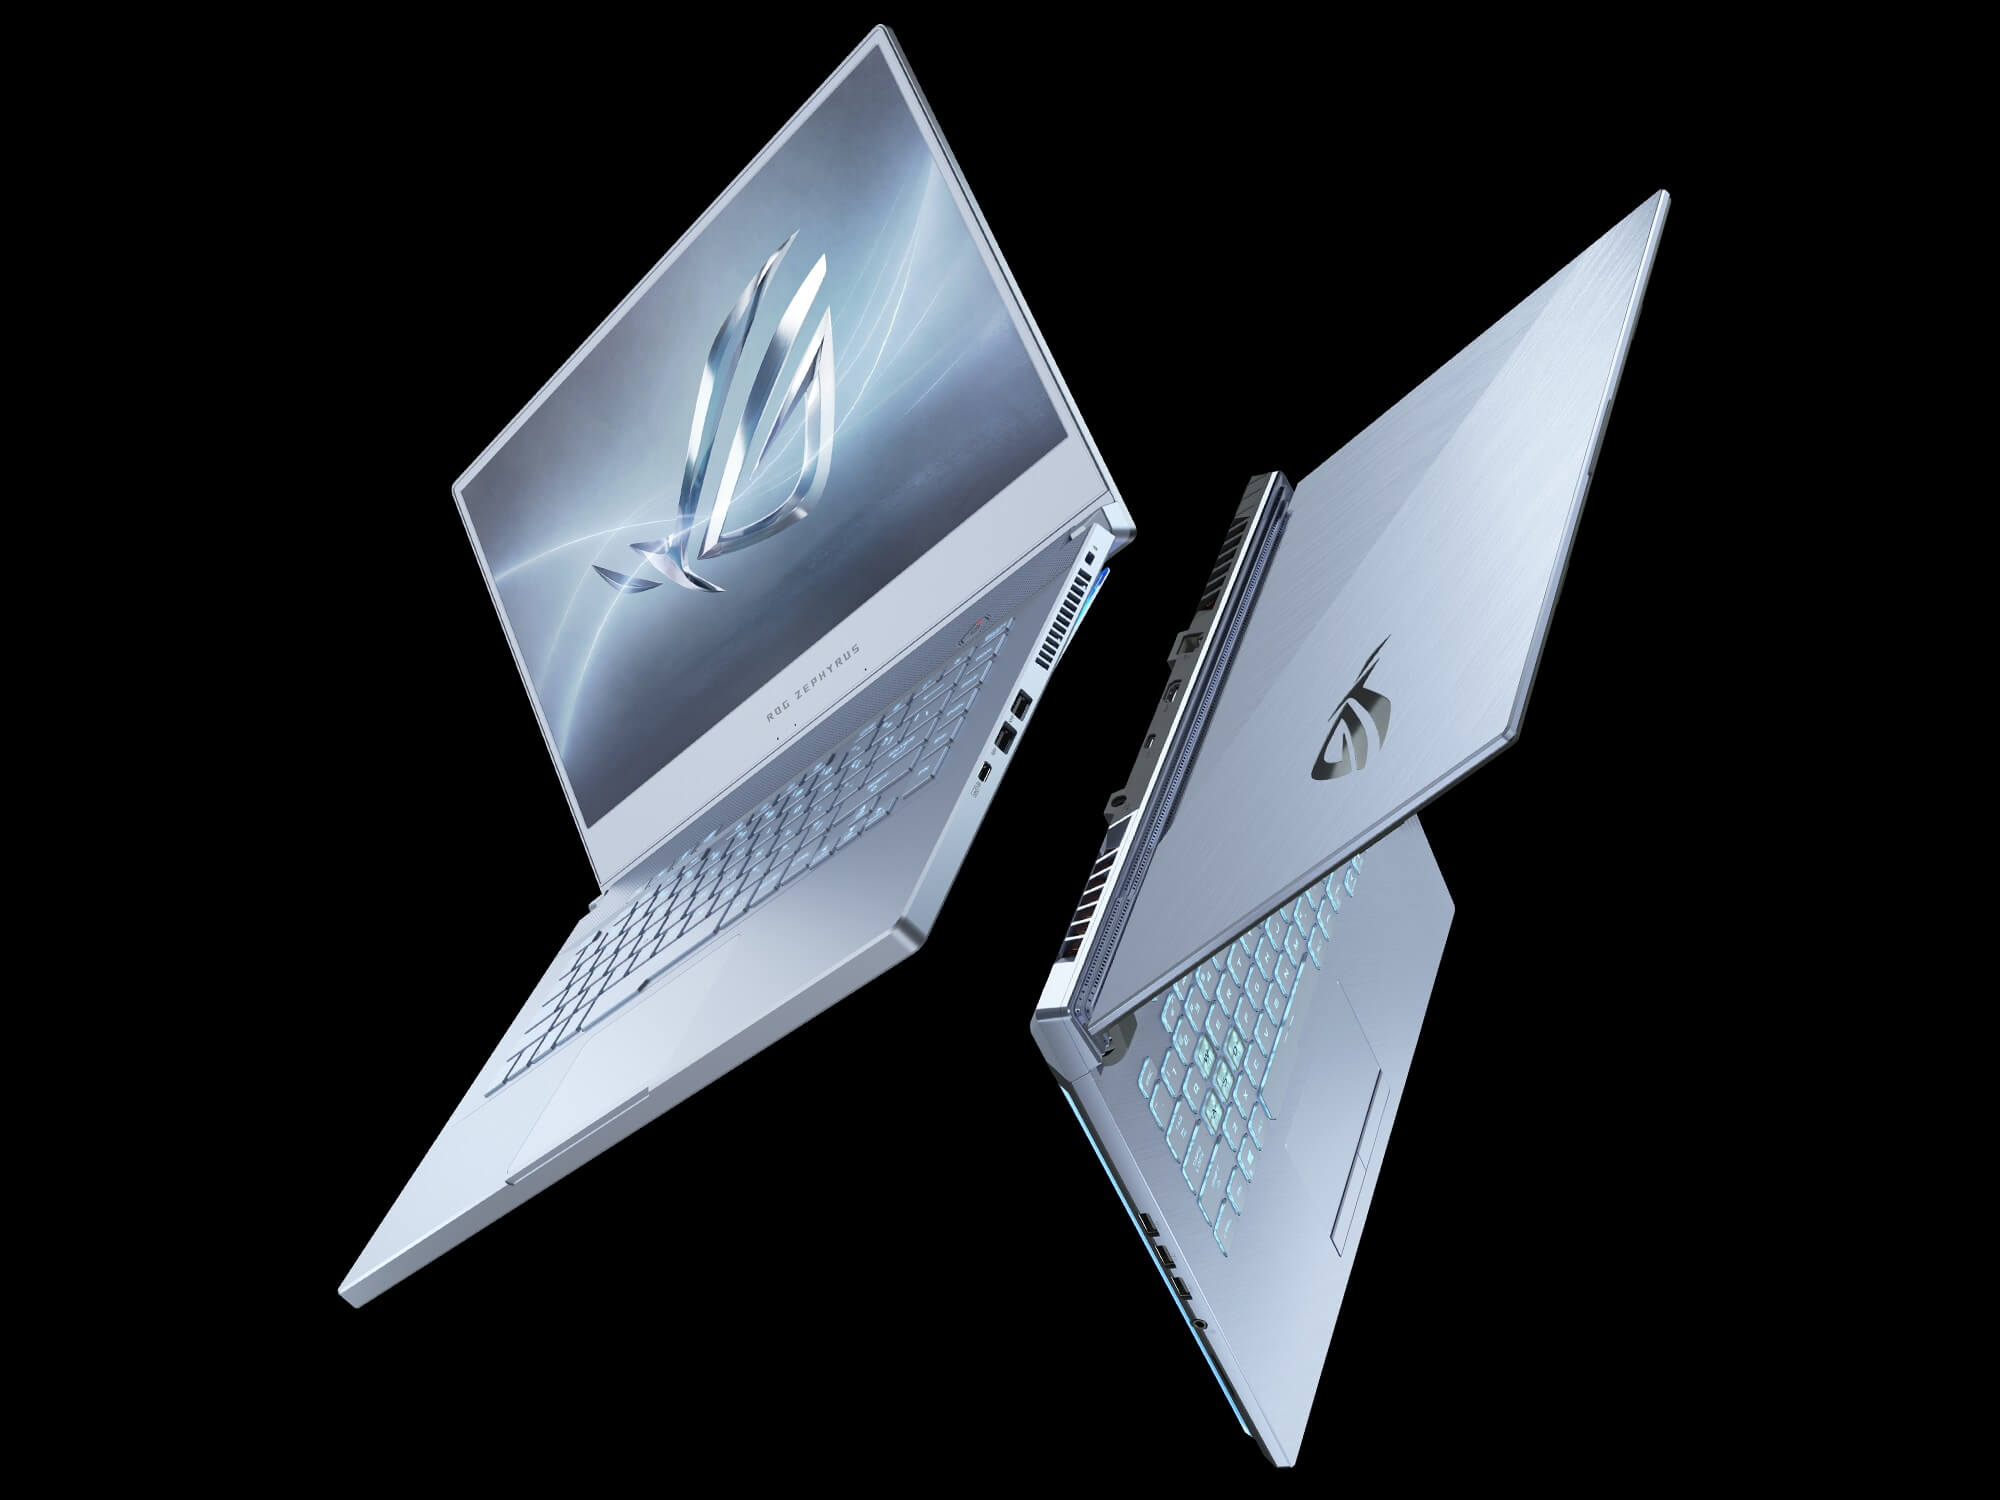 Portátil color Azul Glaciar, así serán los nuevos laptops de ASUS